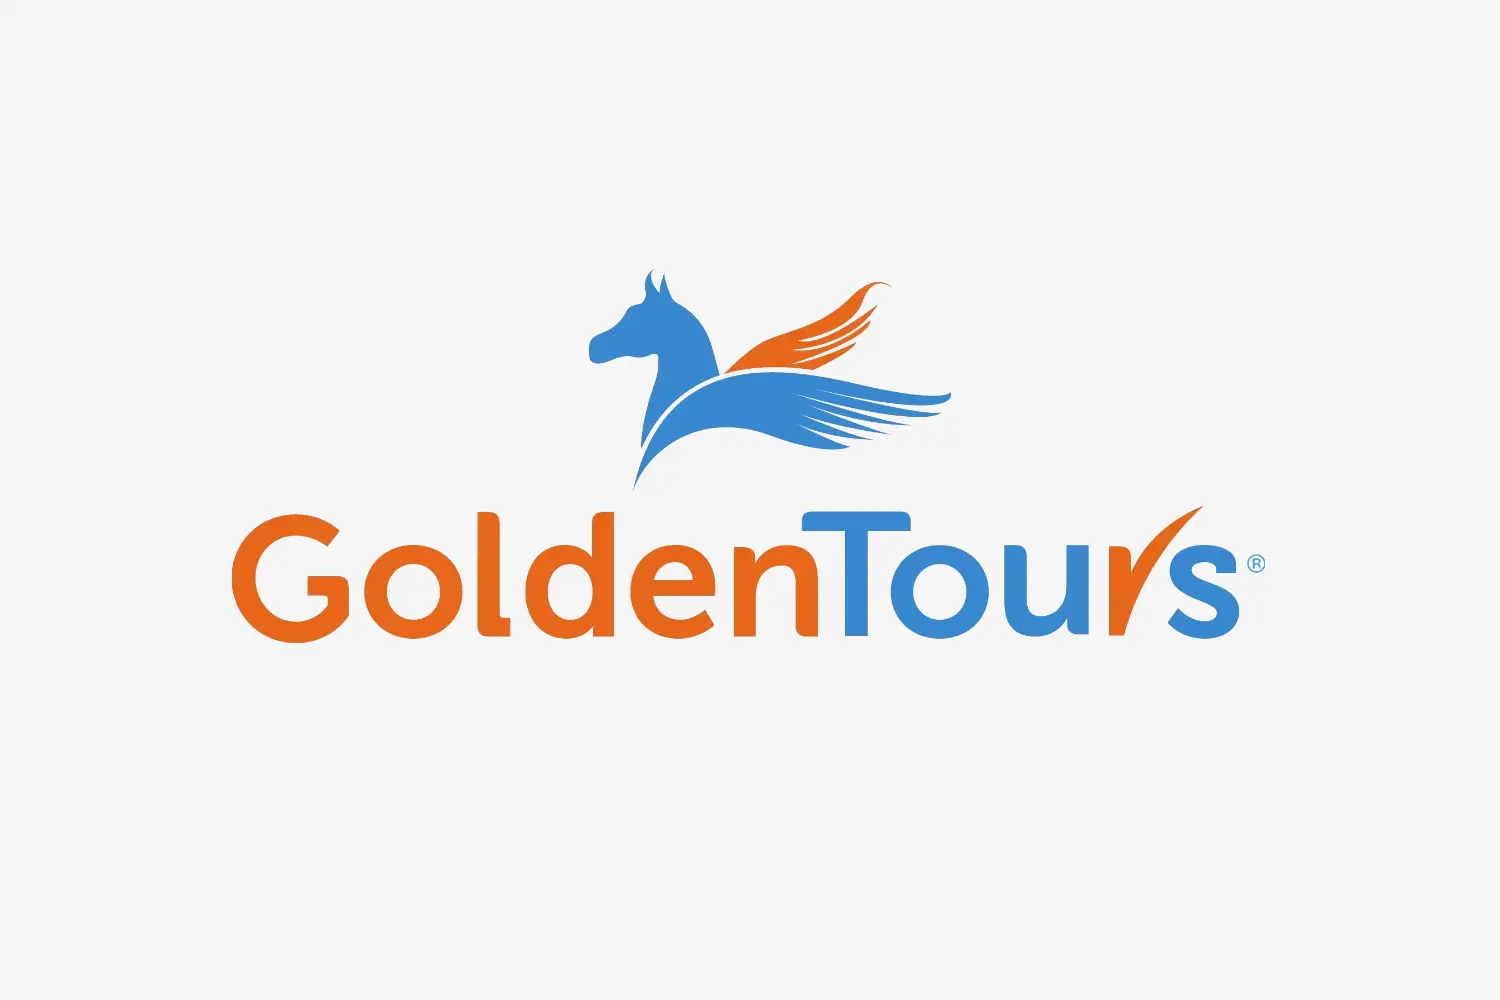 Golden Tours logo banner